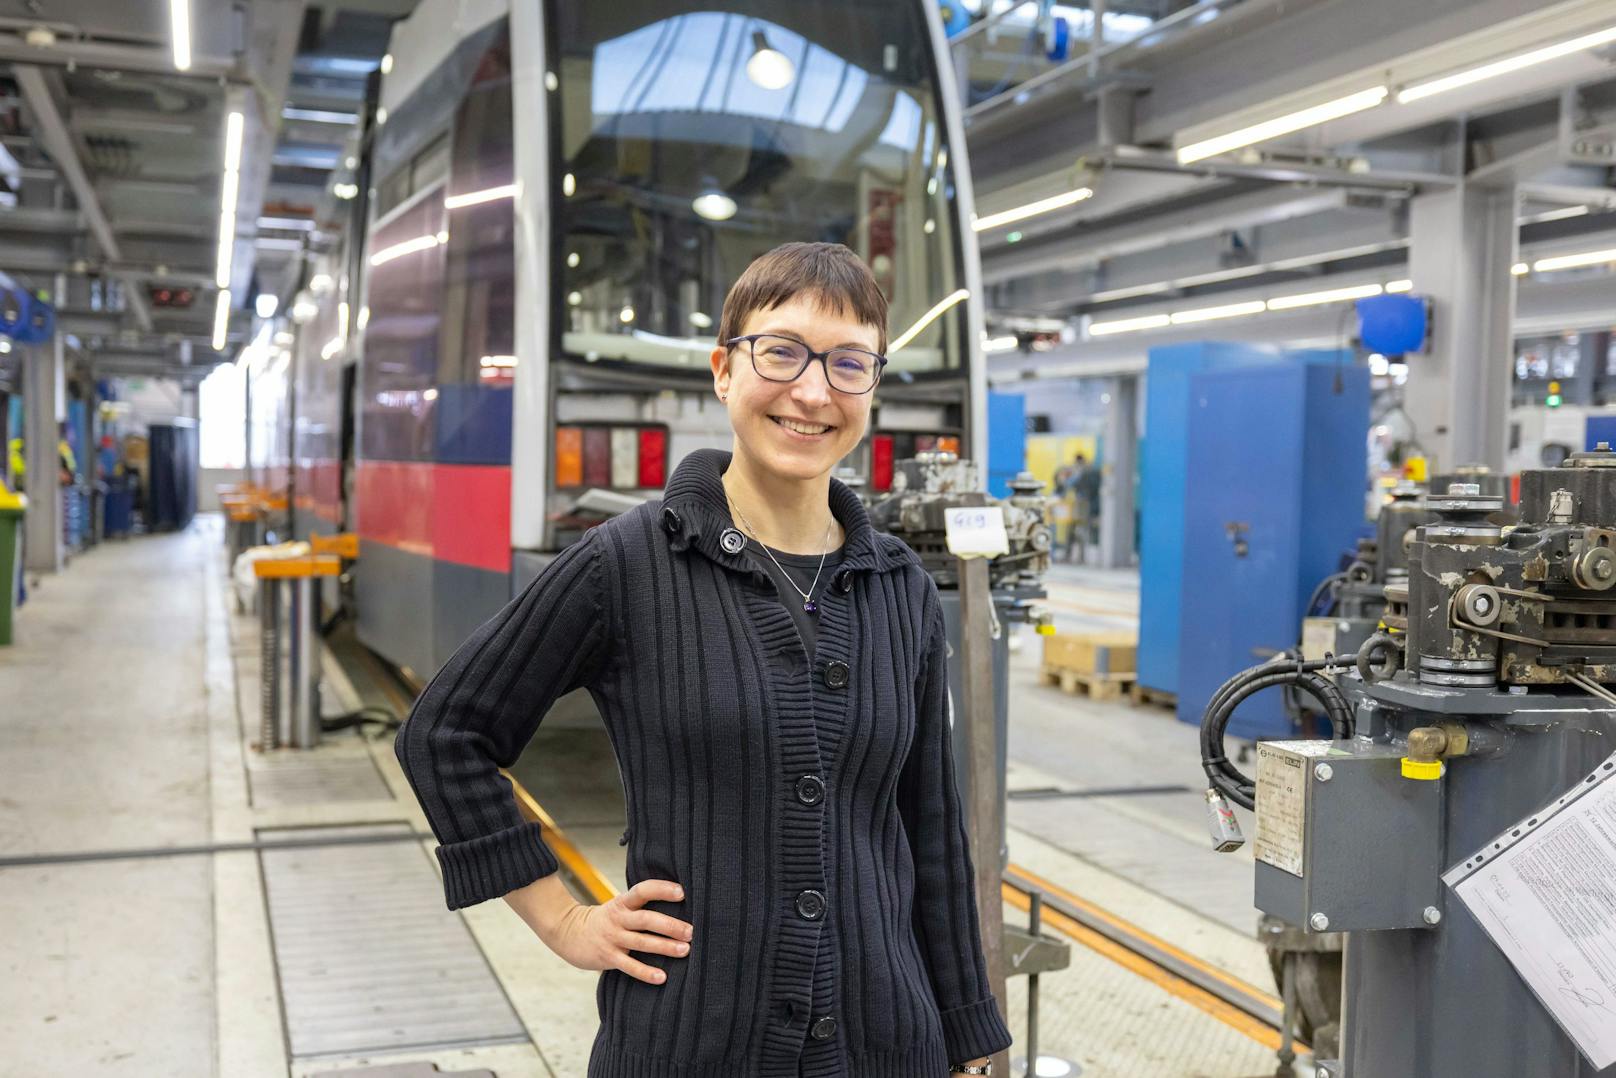 Als einer der ersten "Frauen in die Technik"-Lehrlinge der Wiener Linien wechselte Helga Marksteiner (43) 2019 vom Nagelstudio in die Werkstätte. Mittlerweile ist die Ausbildnerin für die neuen zwölf FiT-Programmteilnehmerinnen.